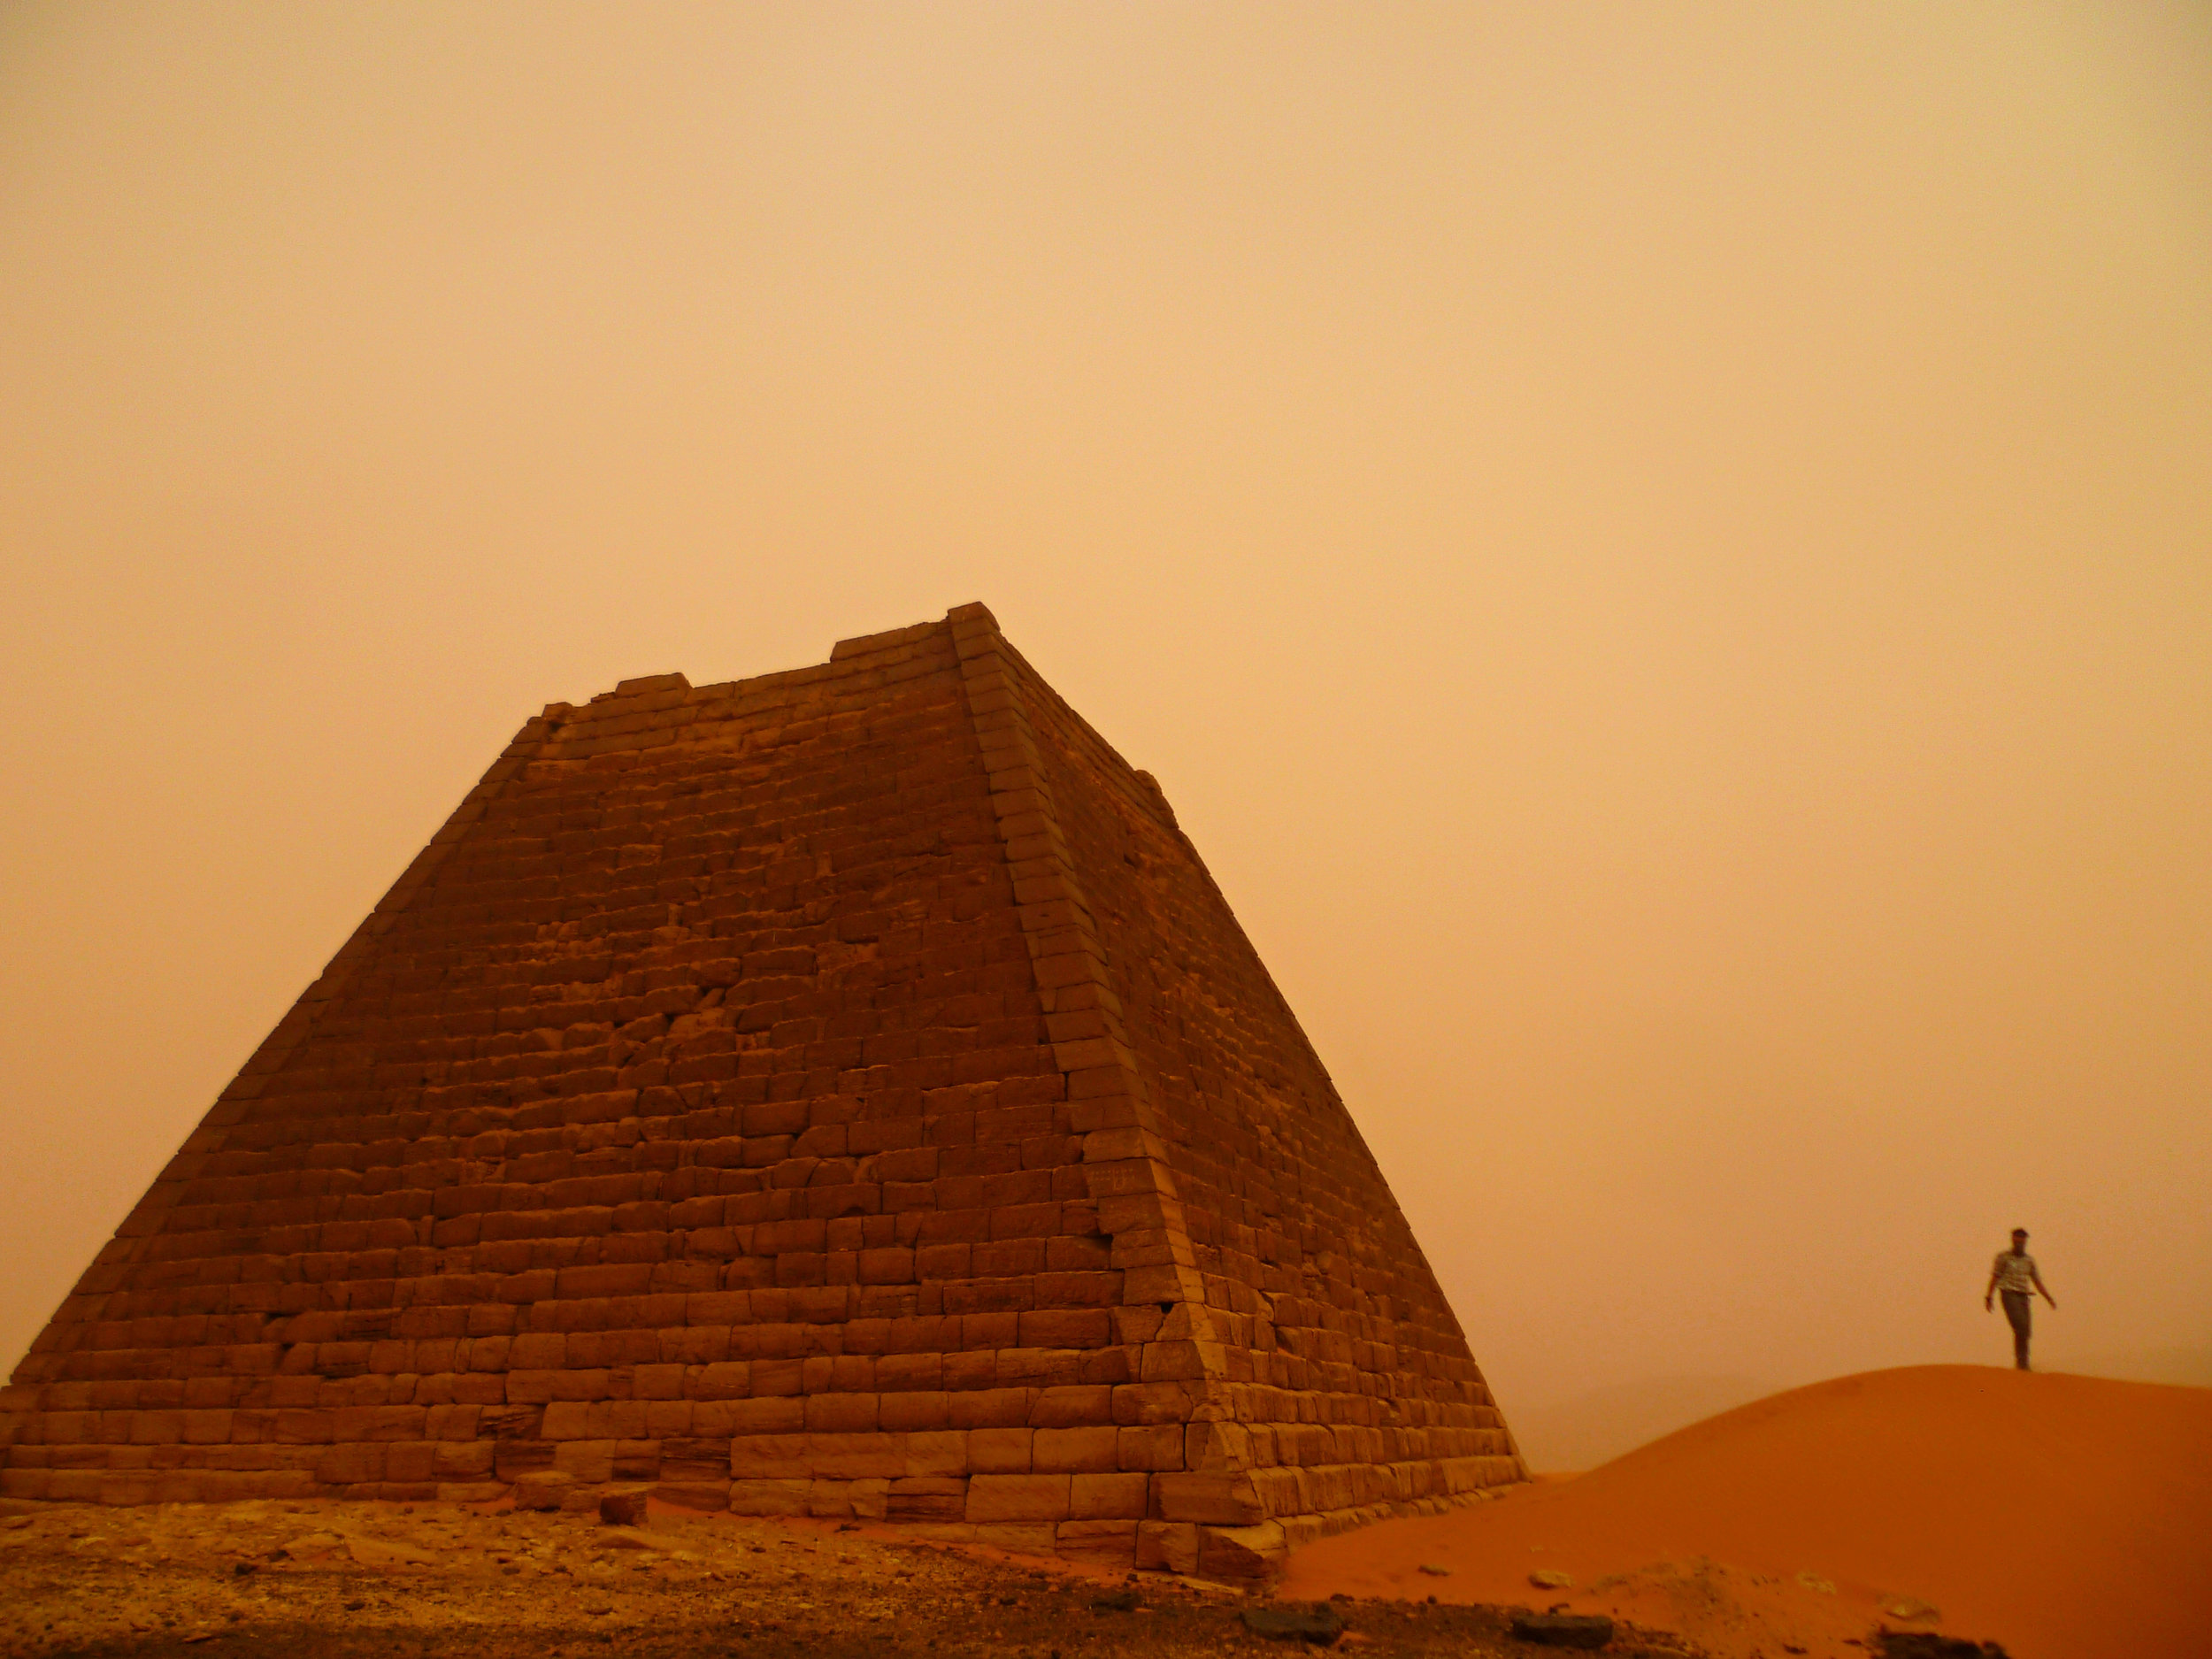 The Great Pyramids Giza Egypt Souvenir Patch